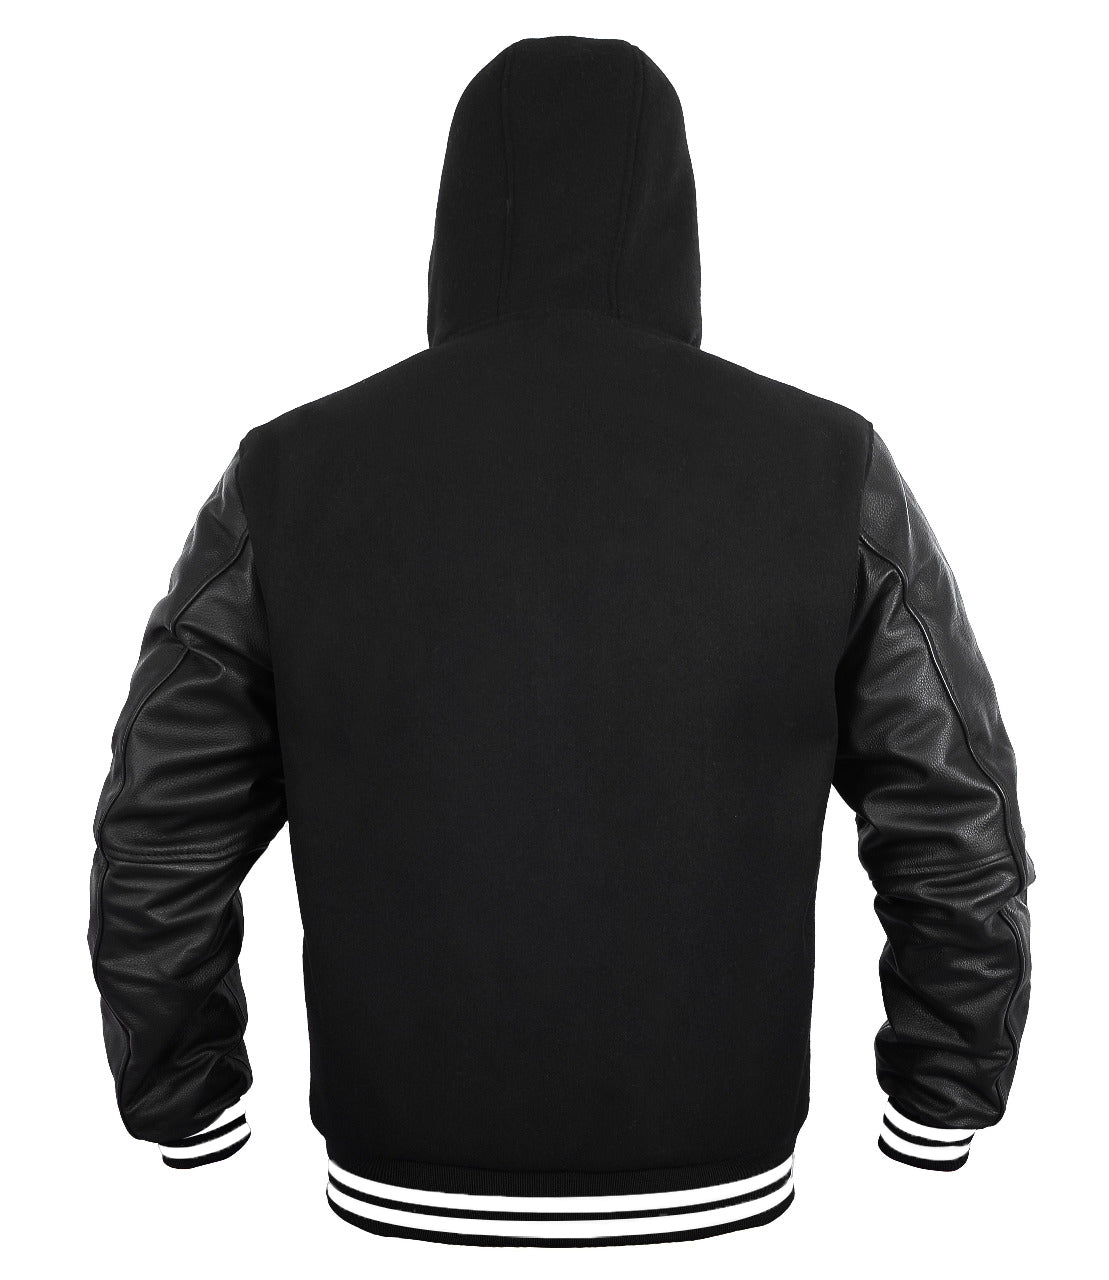 Mens Hoodie Wool+Leather Black Body with Black Genuine Leather Arm Sleeves Letterman College Jacket/Hoodie